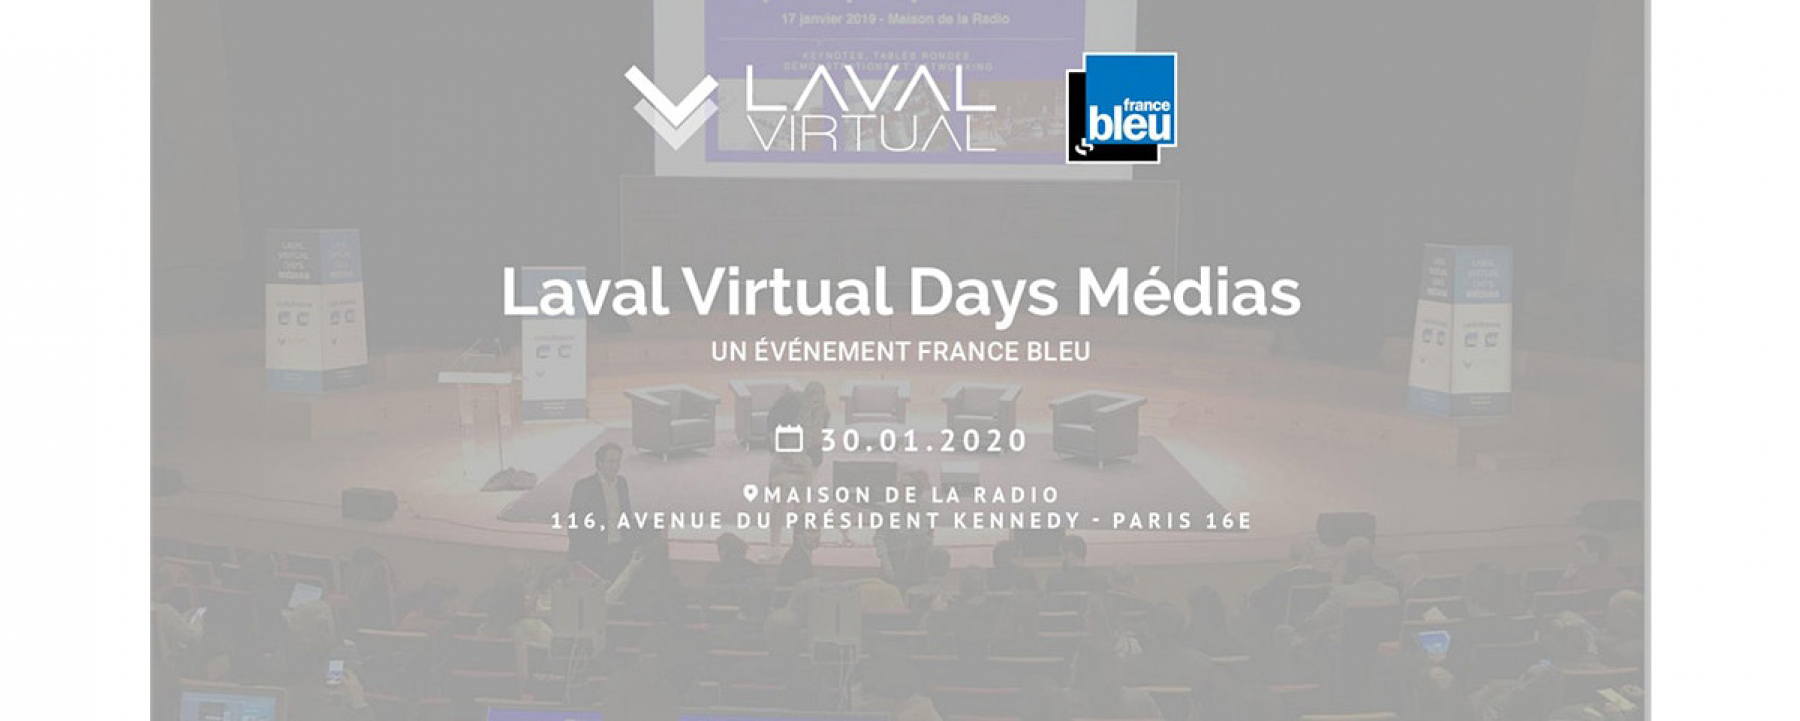 Bannière Laval Virtual Days Médias